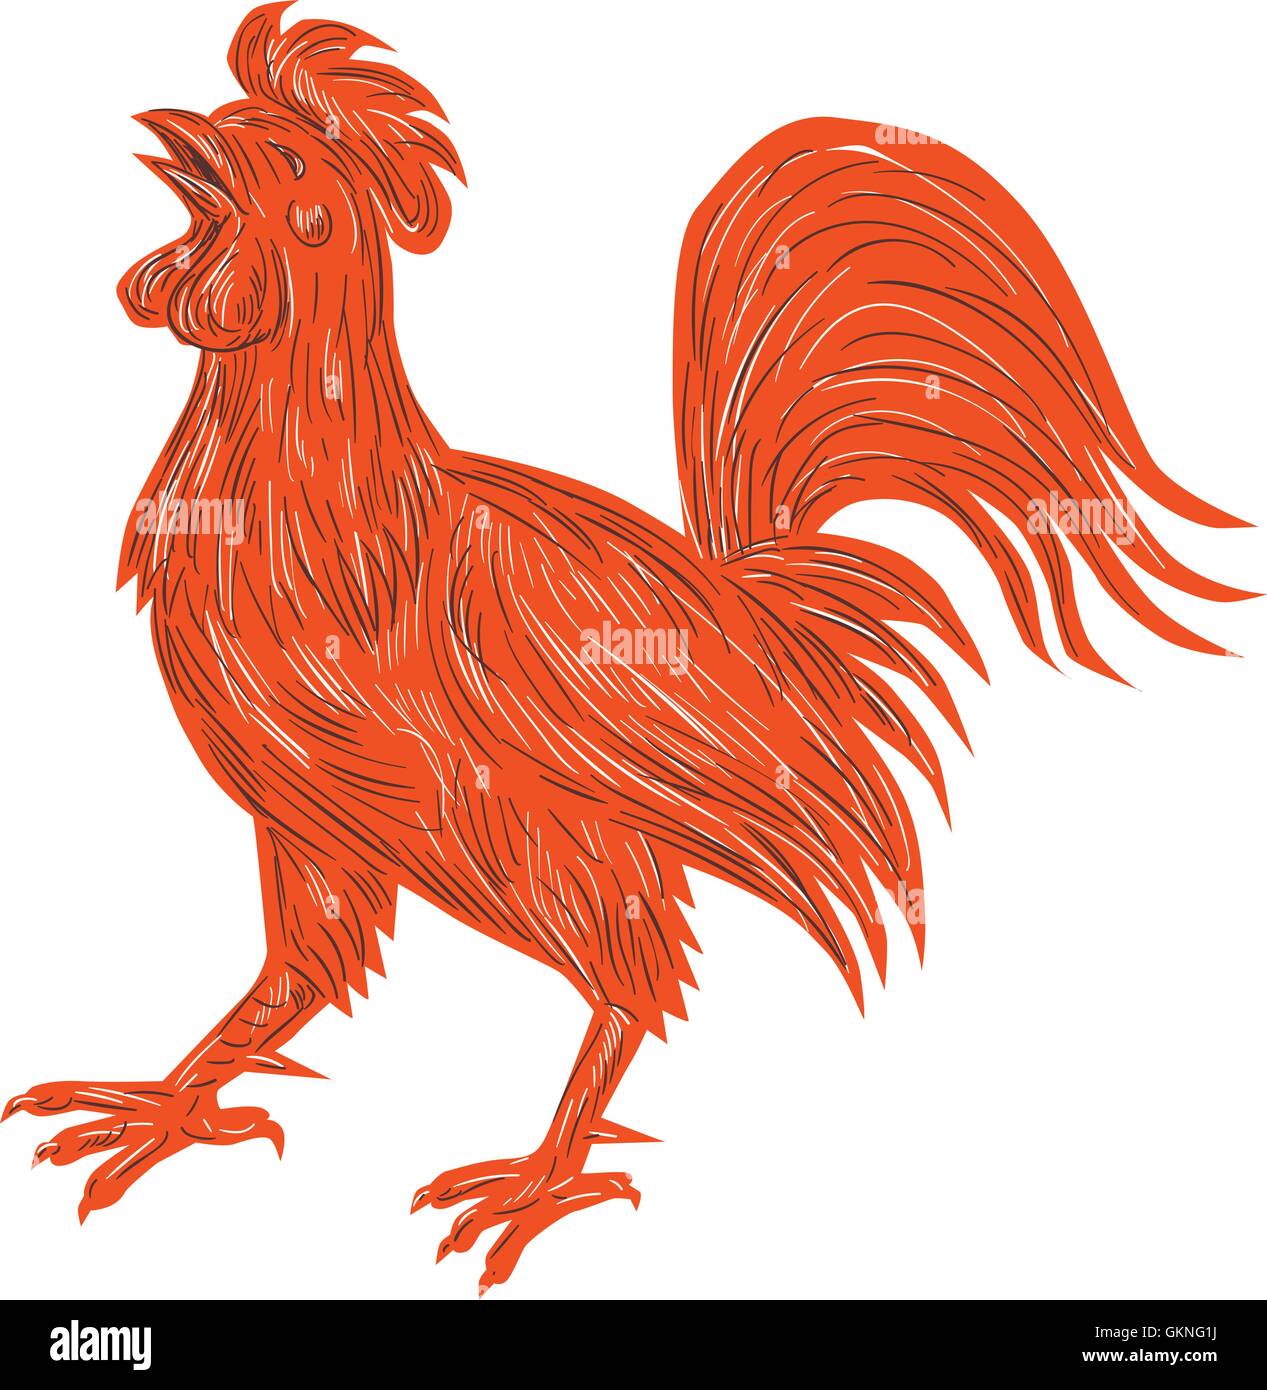 Croquis dessin illustration de style d'un poulet coq qui chantent depuis le côté isolé sur fond blanc. Illustration de Vecteur